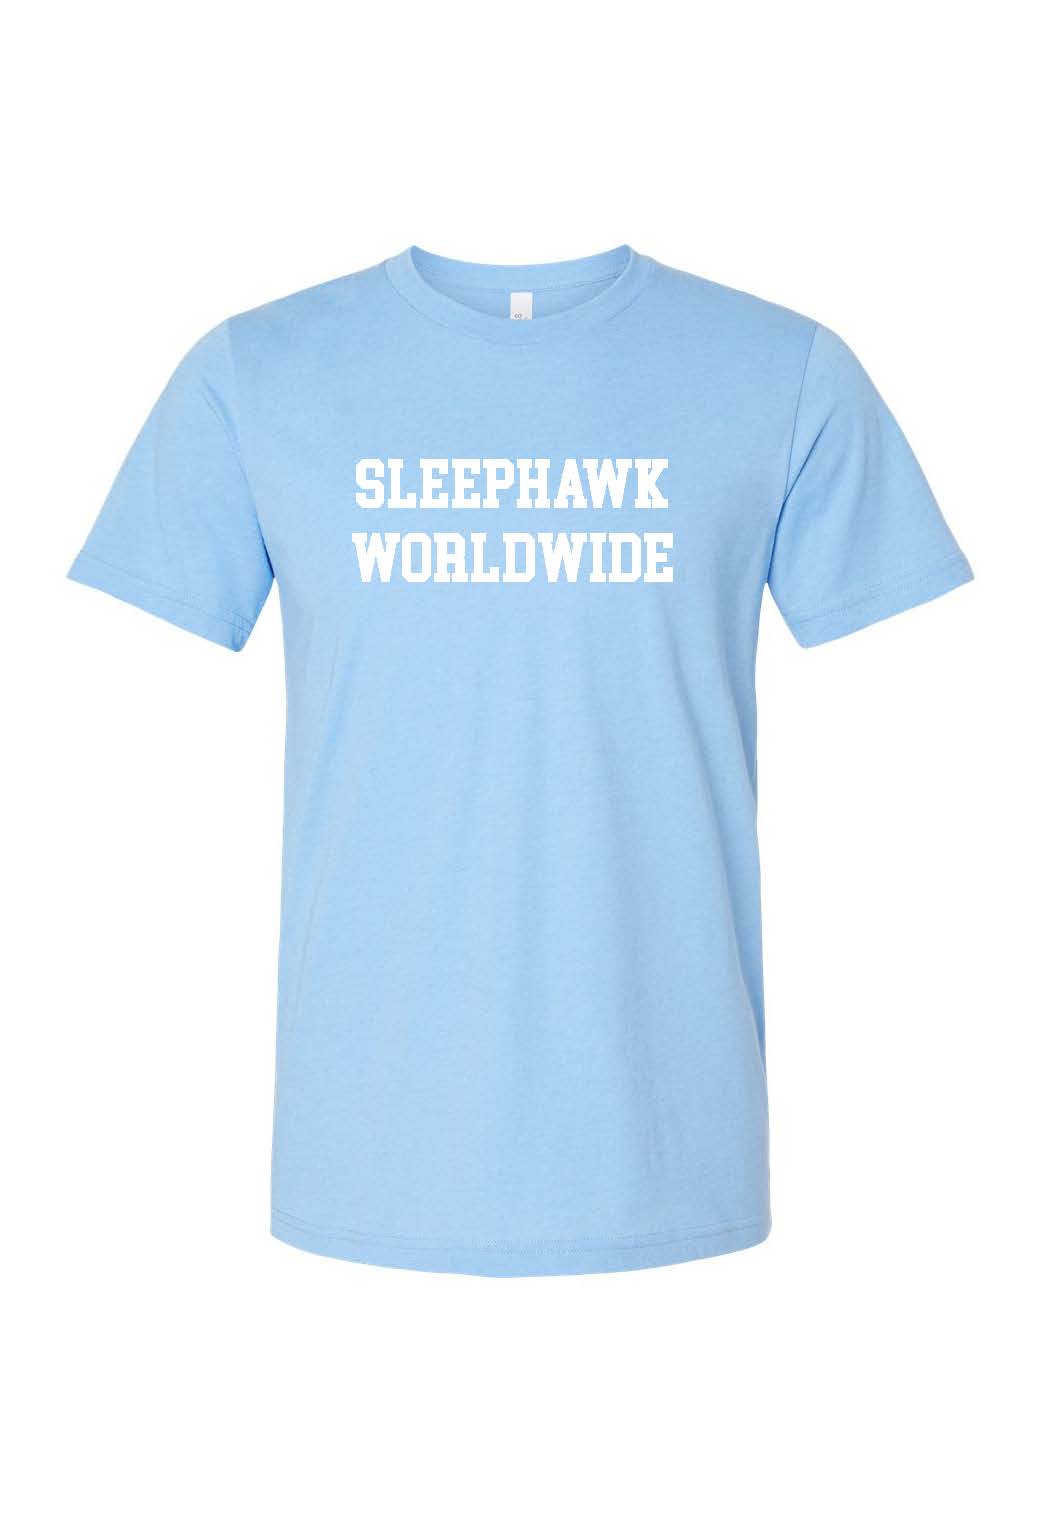 SleepHawk Worldwide Carolina Blue Tee